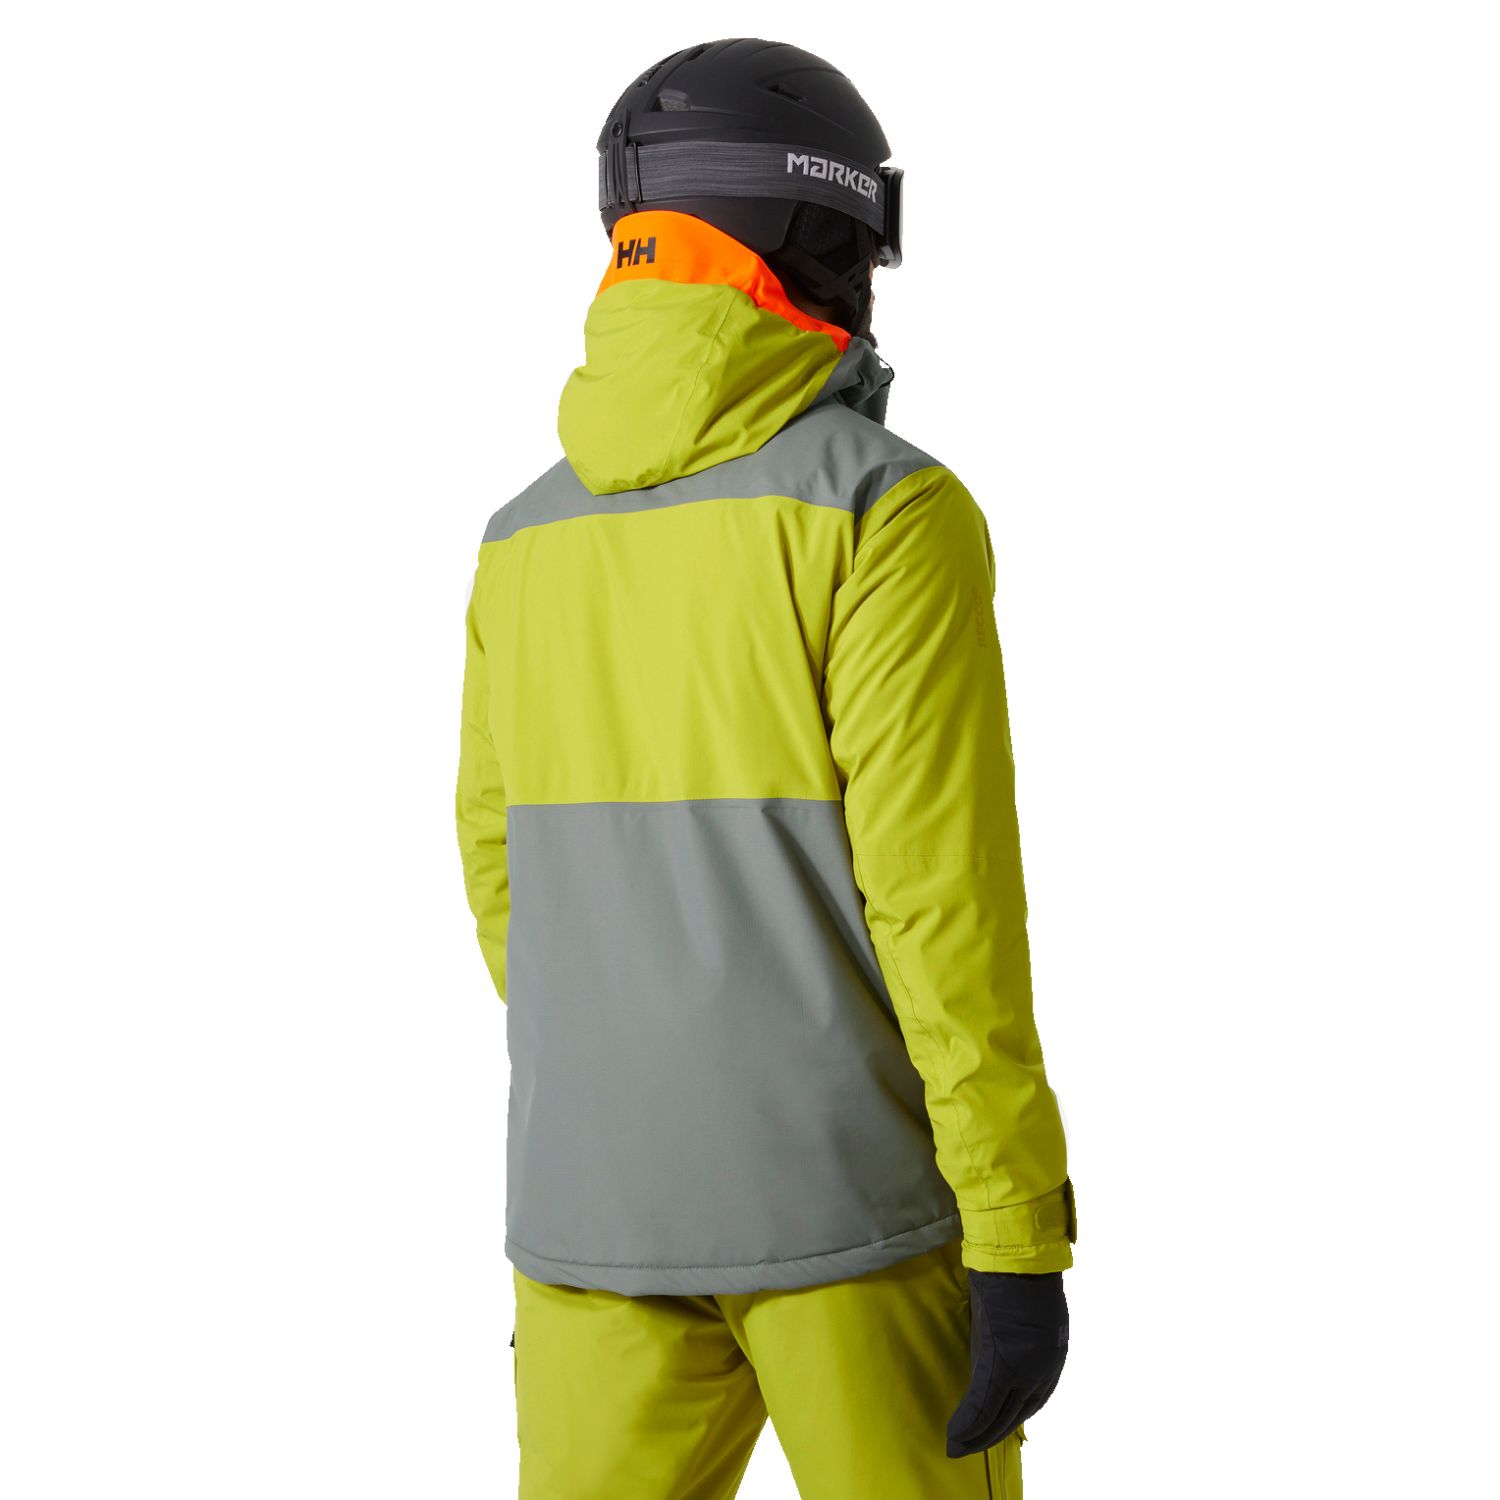 Helly Hansen Powdreamer 2.0, ski jacket, men, bright moss